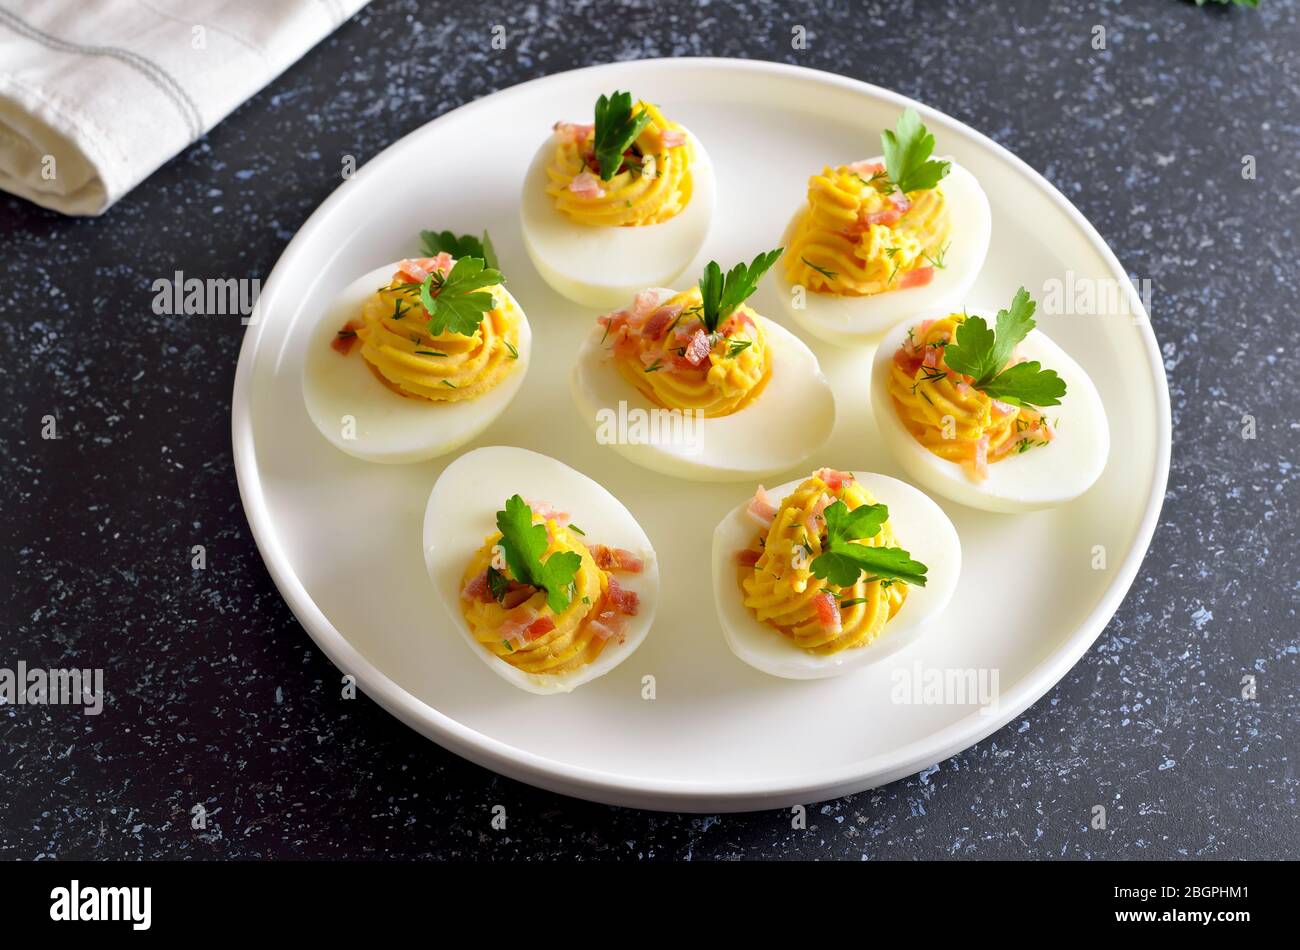 Uova farcite con tuorlo d'uovo, pancetta, senape e prezzemolo su piatto bianco Foto Stock